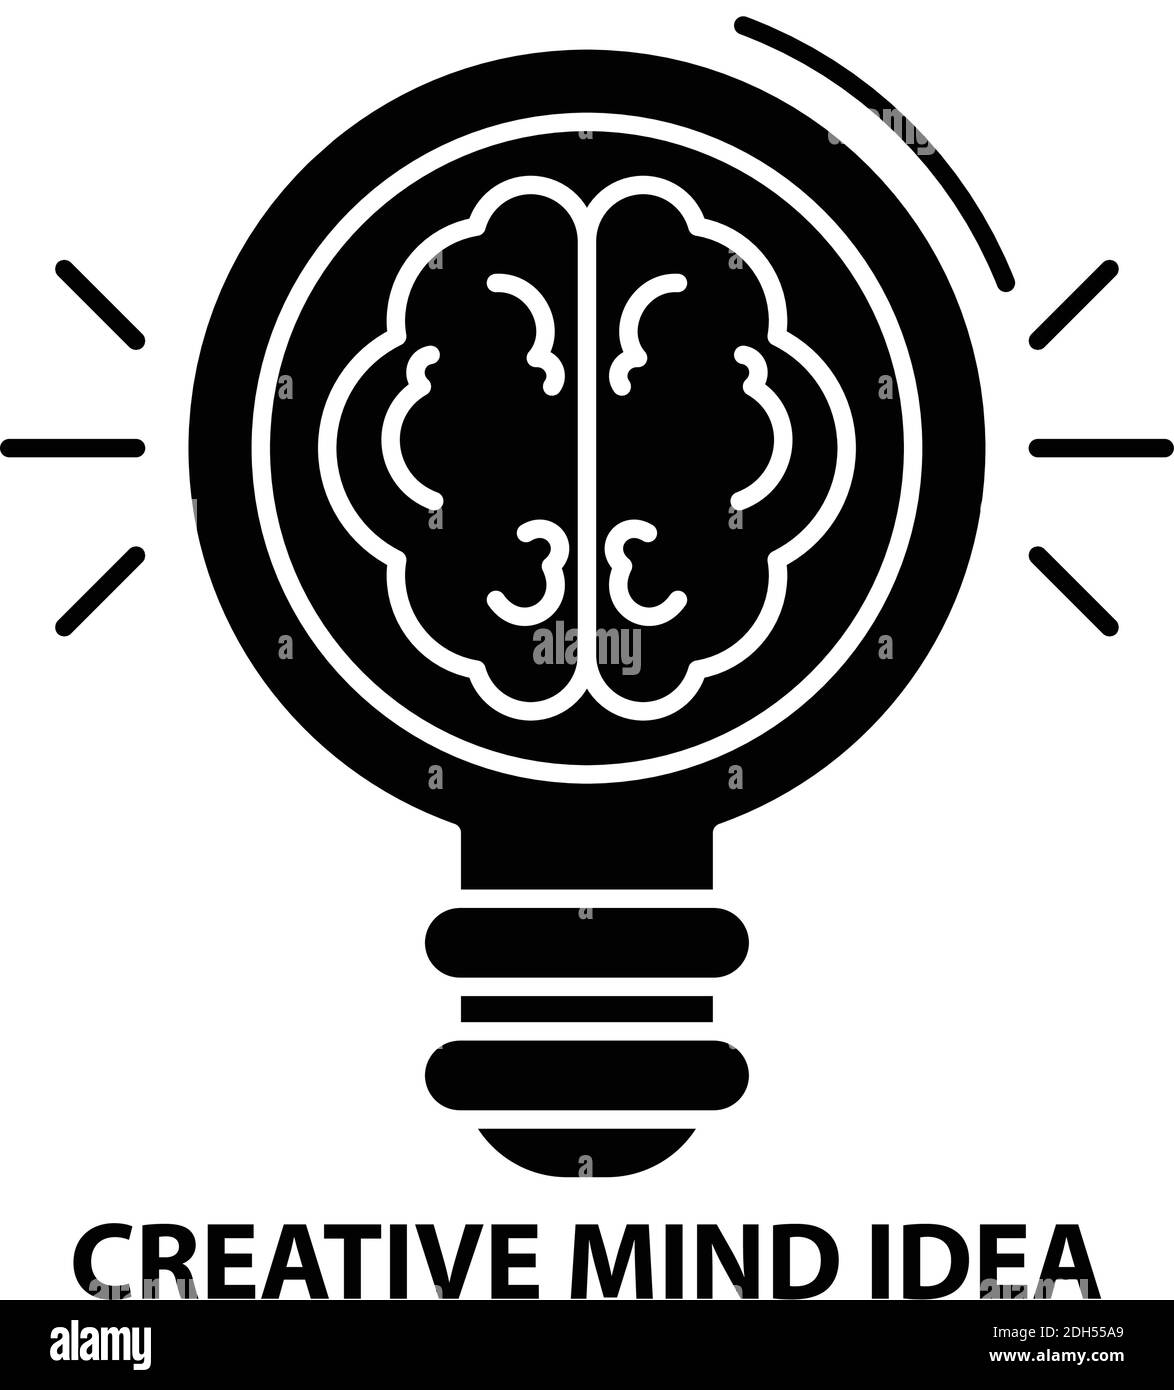 Creative Mind Idea Icon, schwarzes Vektorzeichen mit editierbaren Konturen, Konzeptdarstellung Stock Vektor